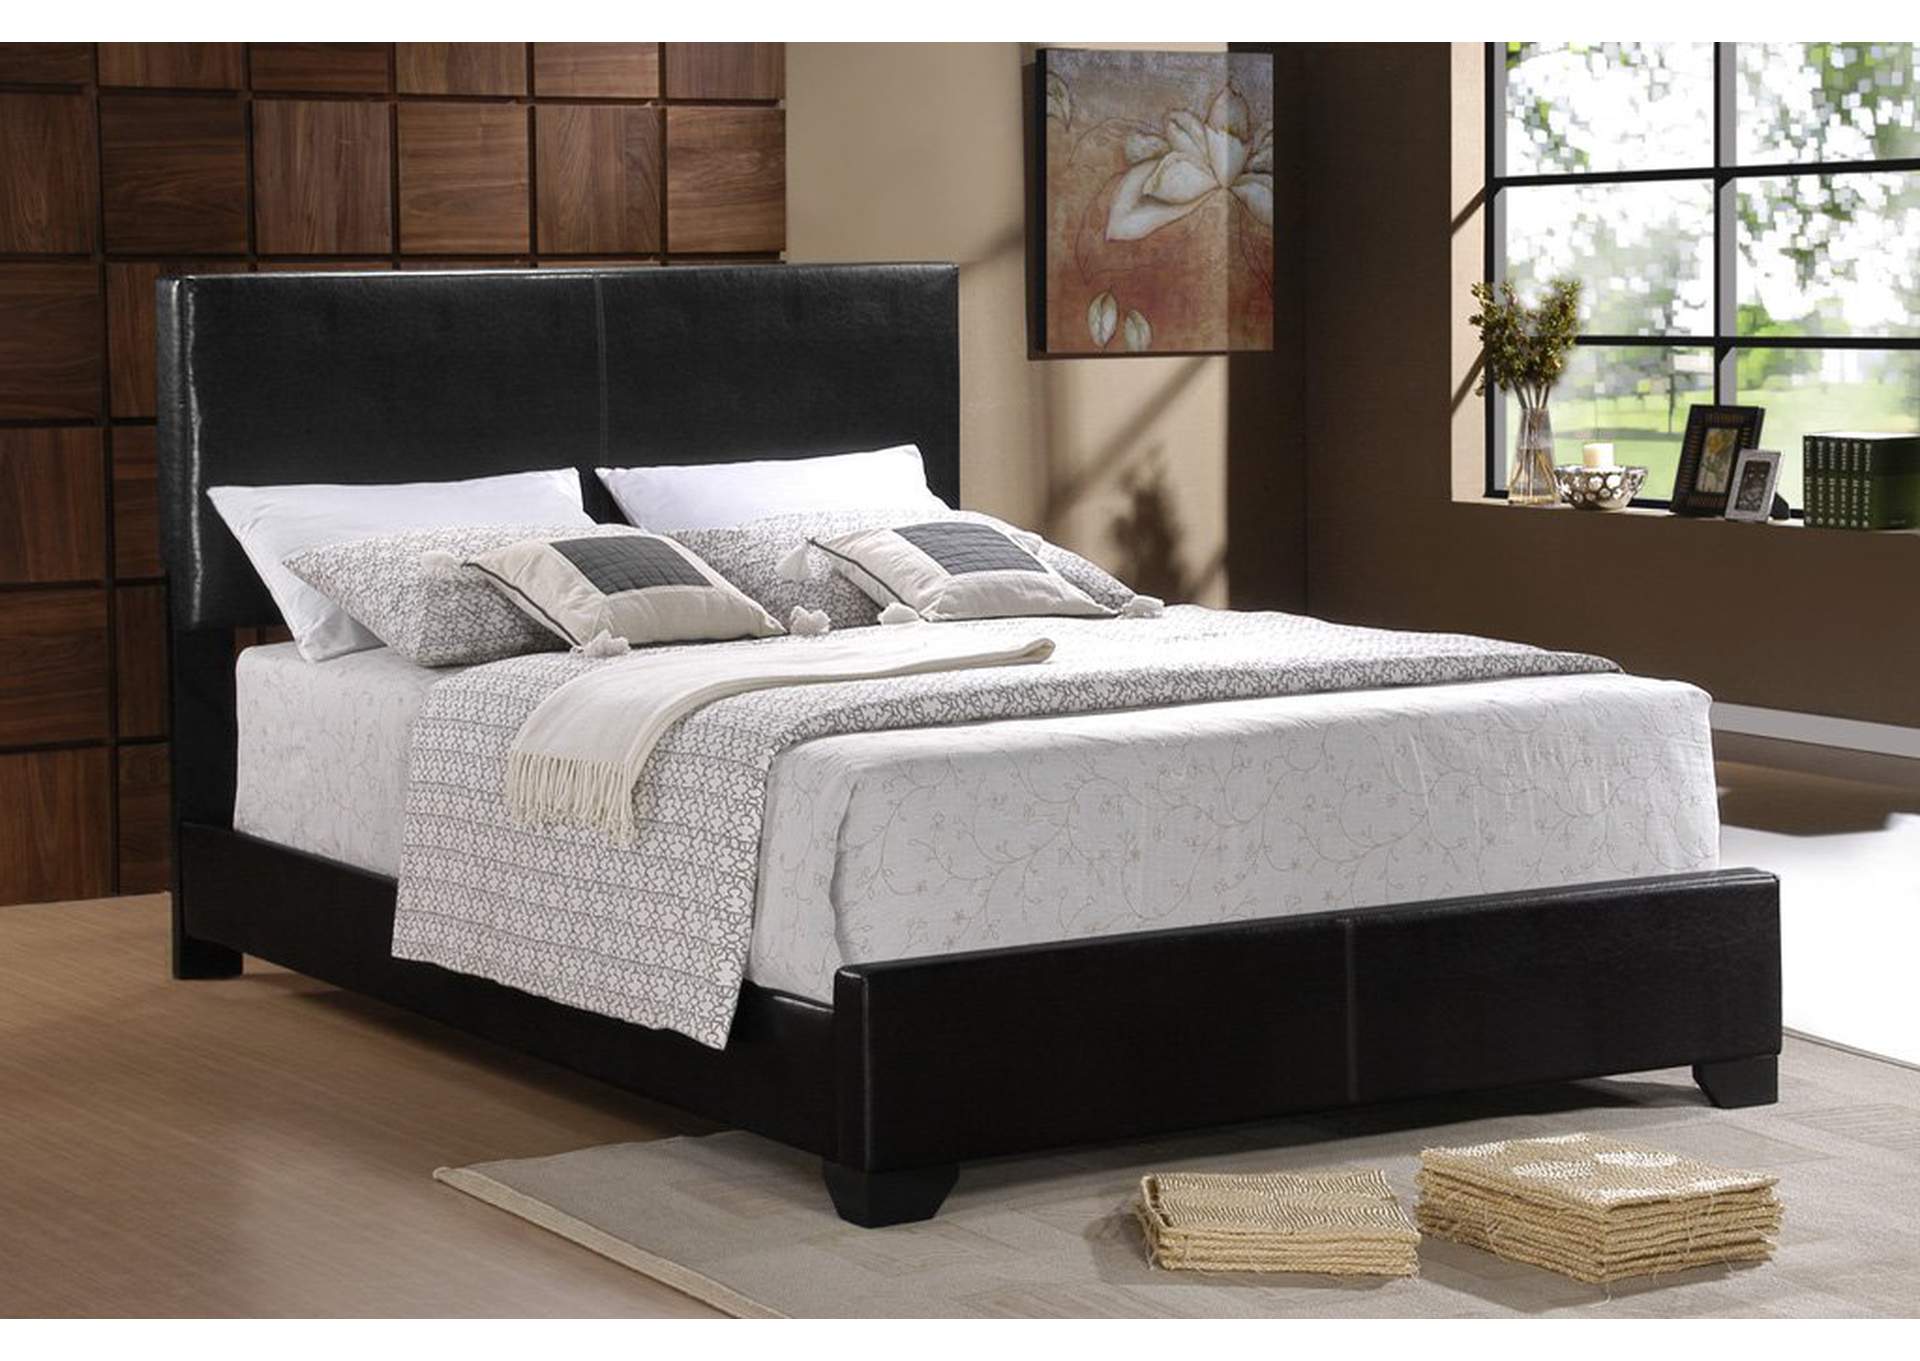 Black Upholstered King Bed,Furniture World Distributors